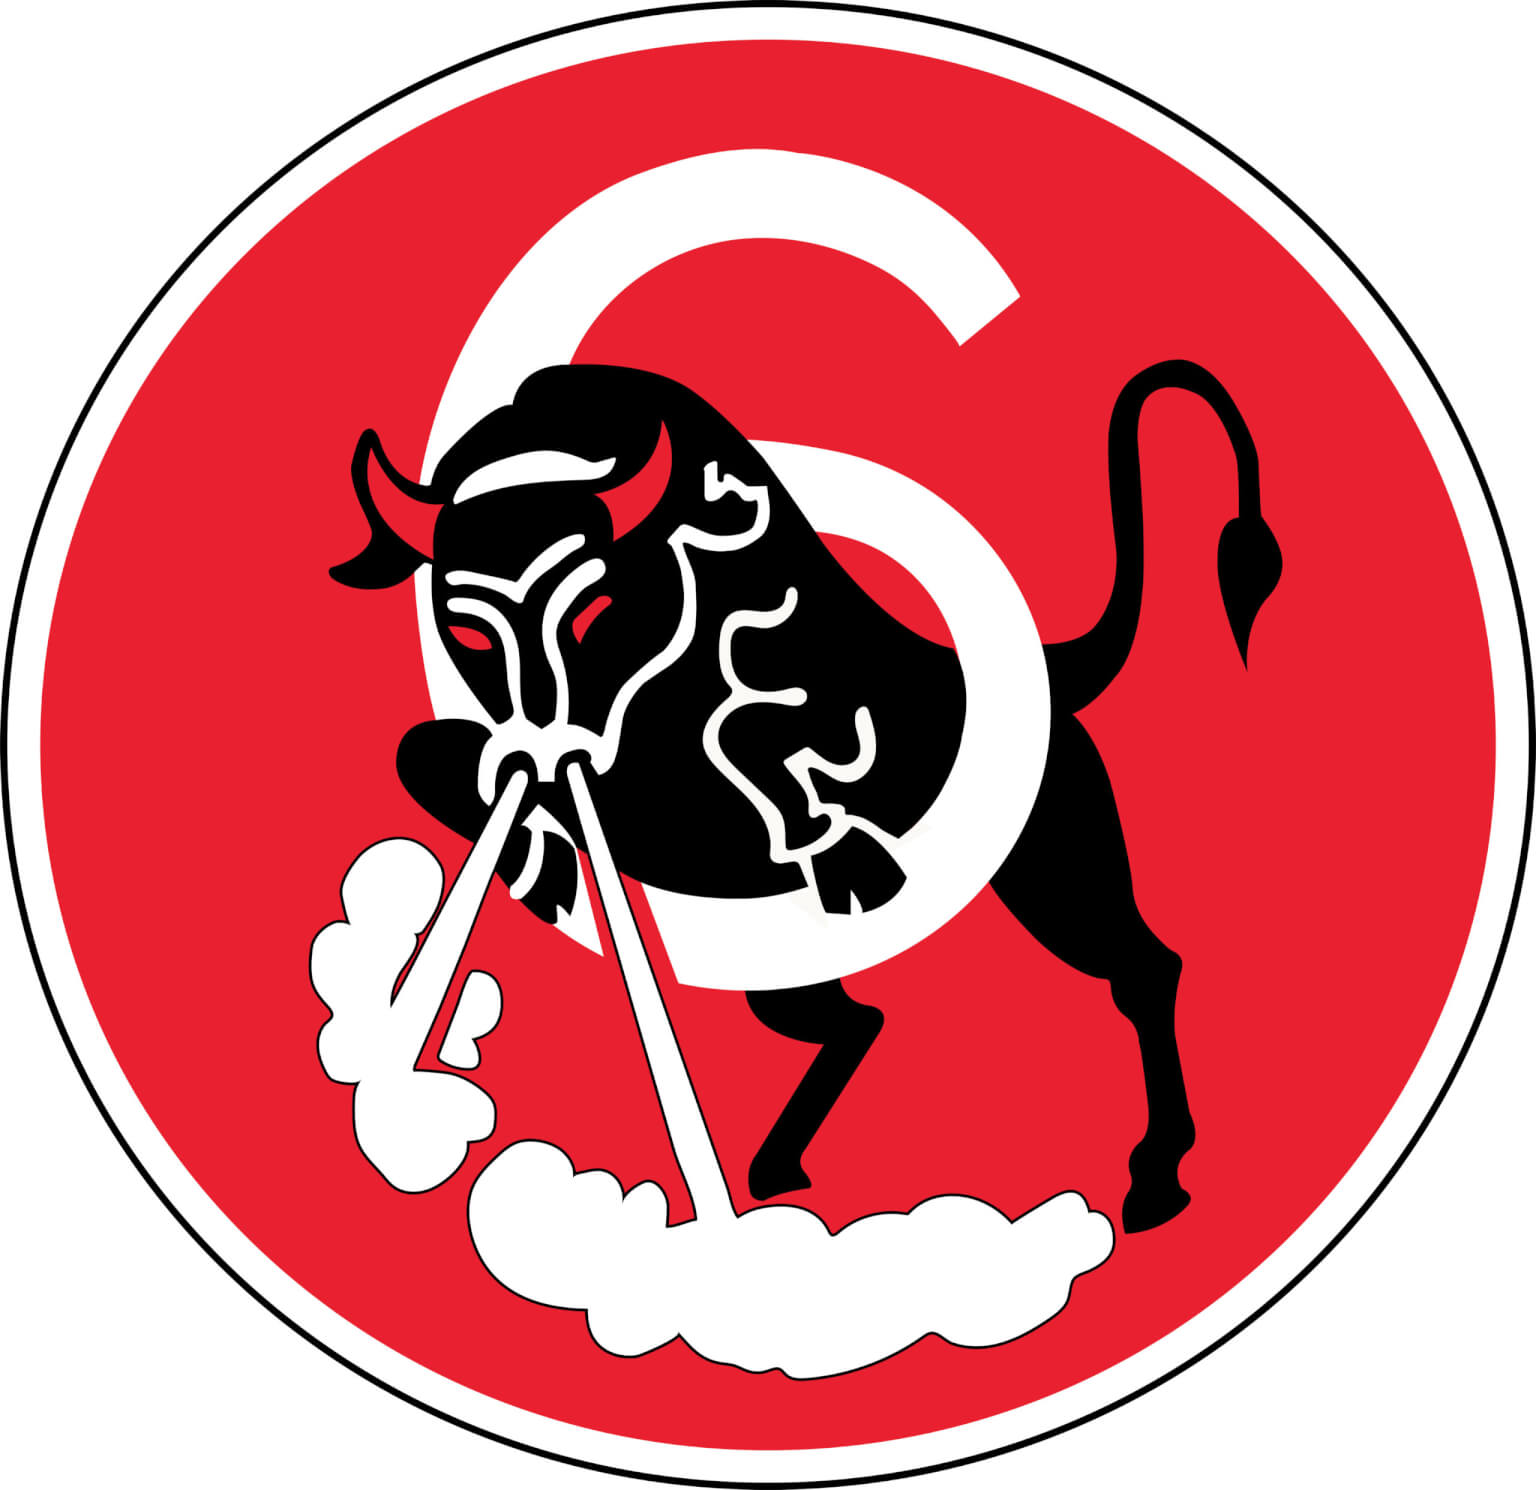 Squadron 6: Bull Six